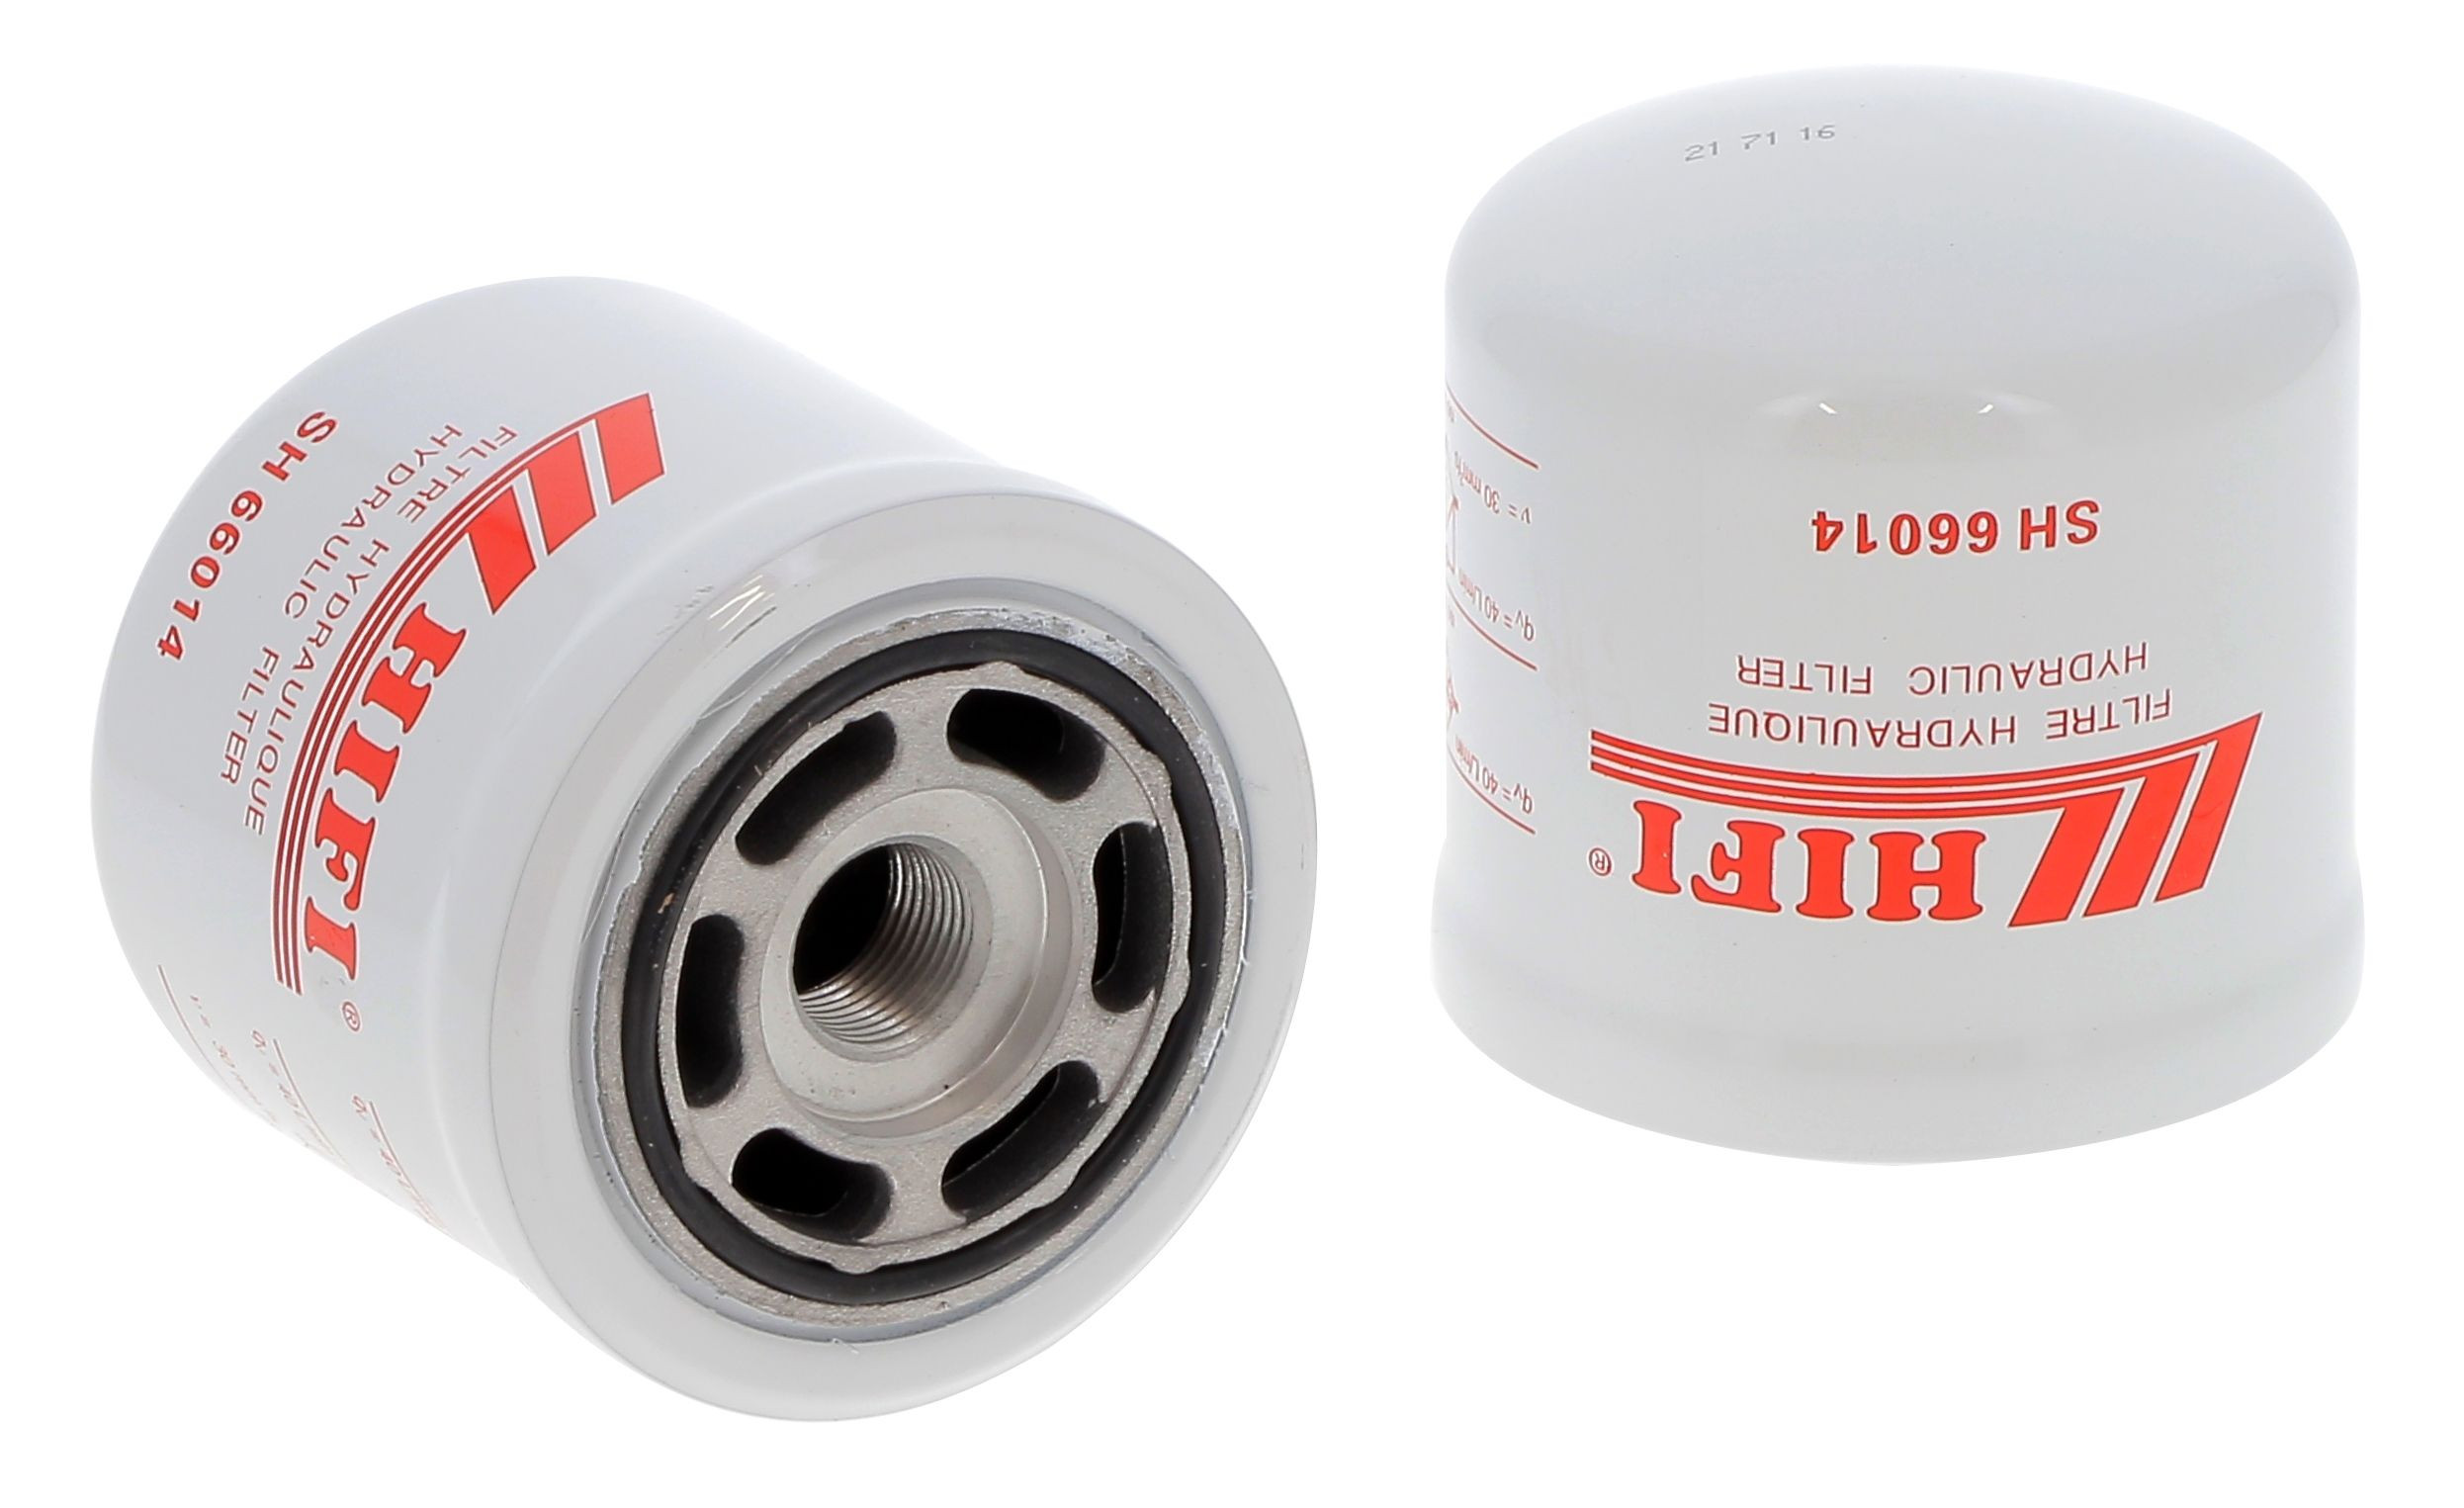 Filtr hydrauliczny  SH 66014 do CLARK GPM 20-30 N L6970